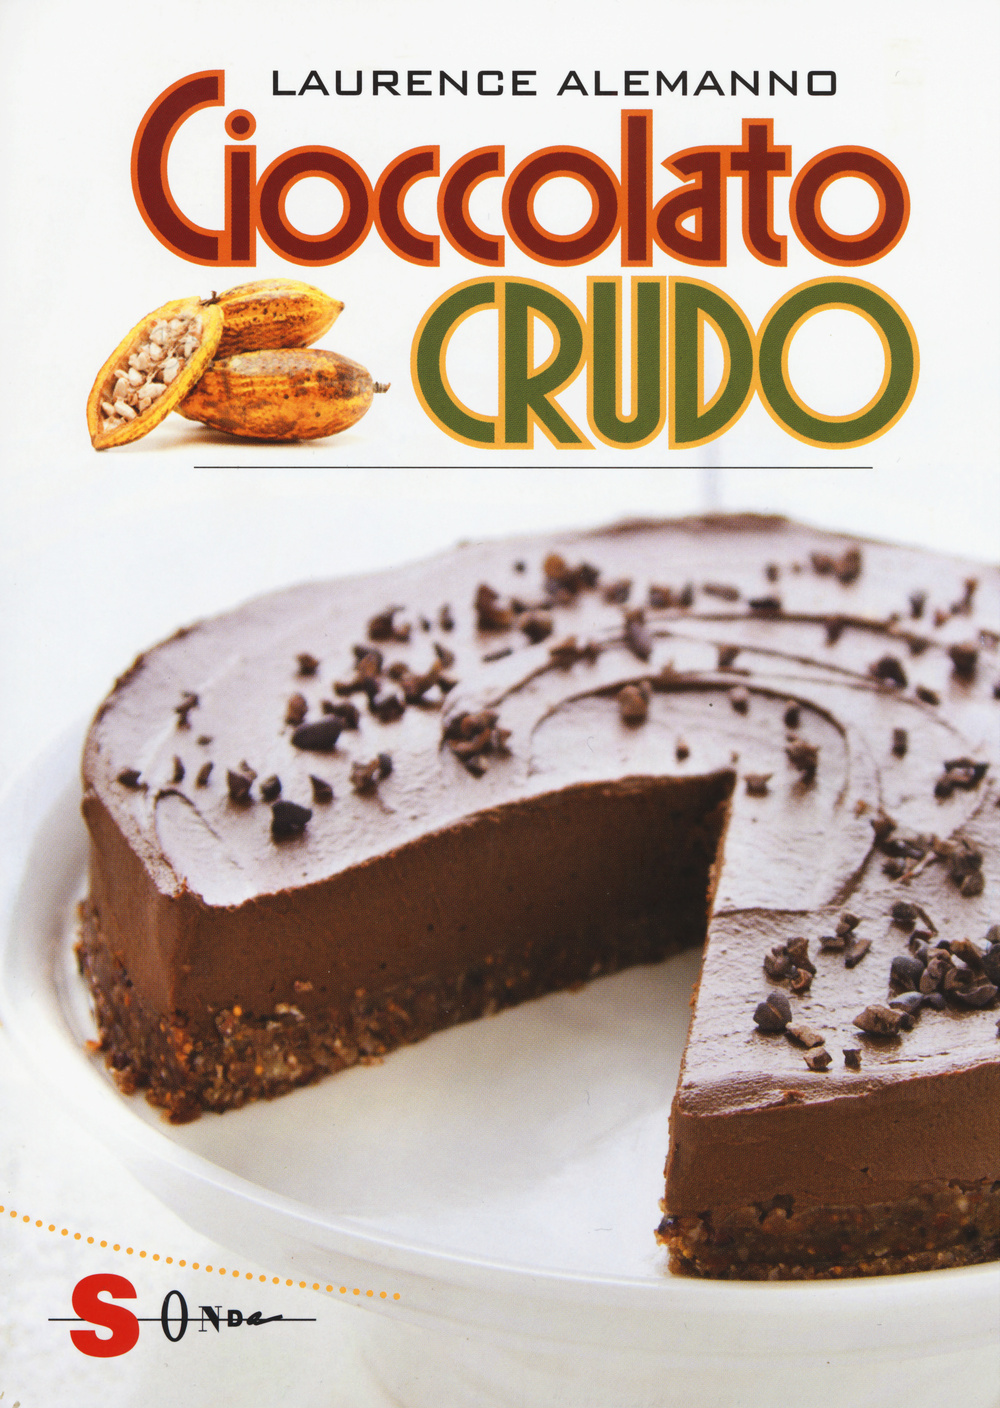 Image of Cioccolato crudo